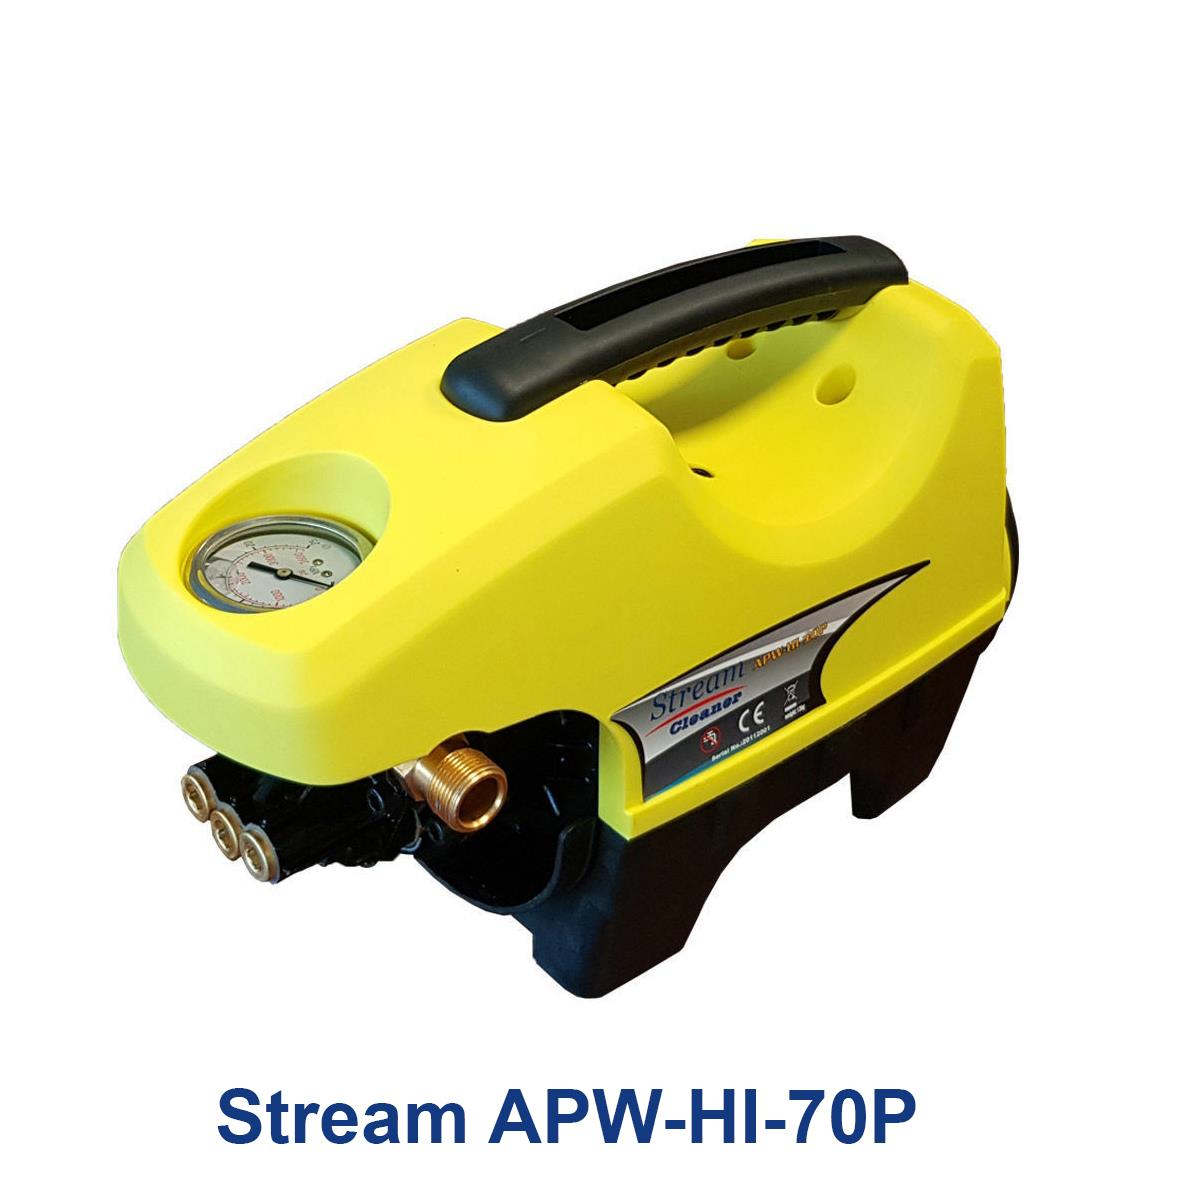 Stream-APW-HI-70P